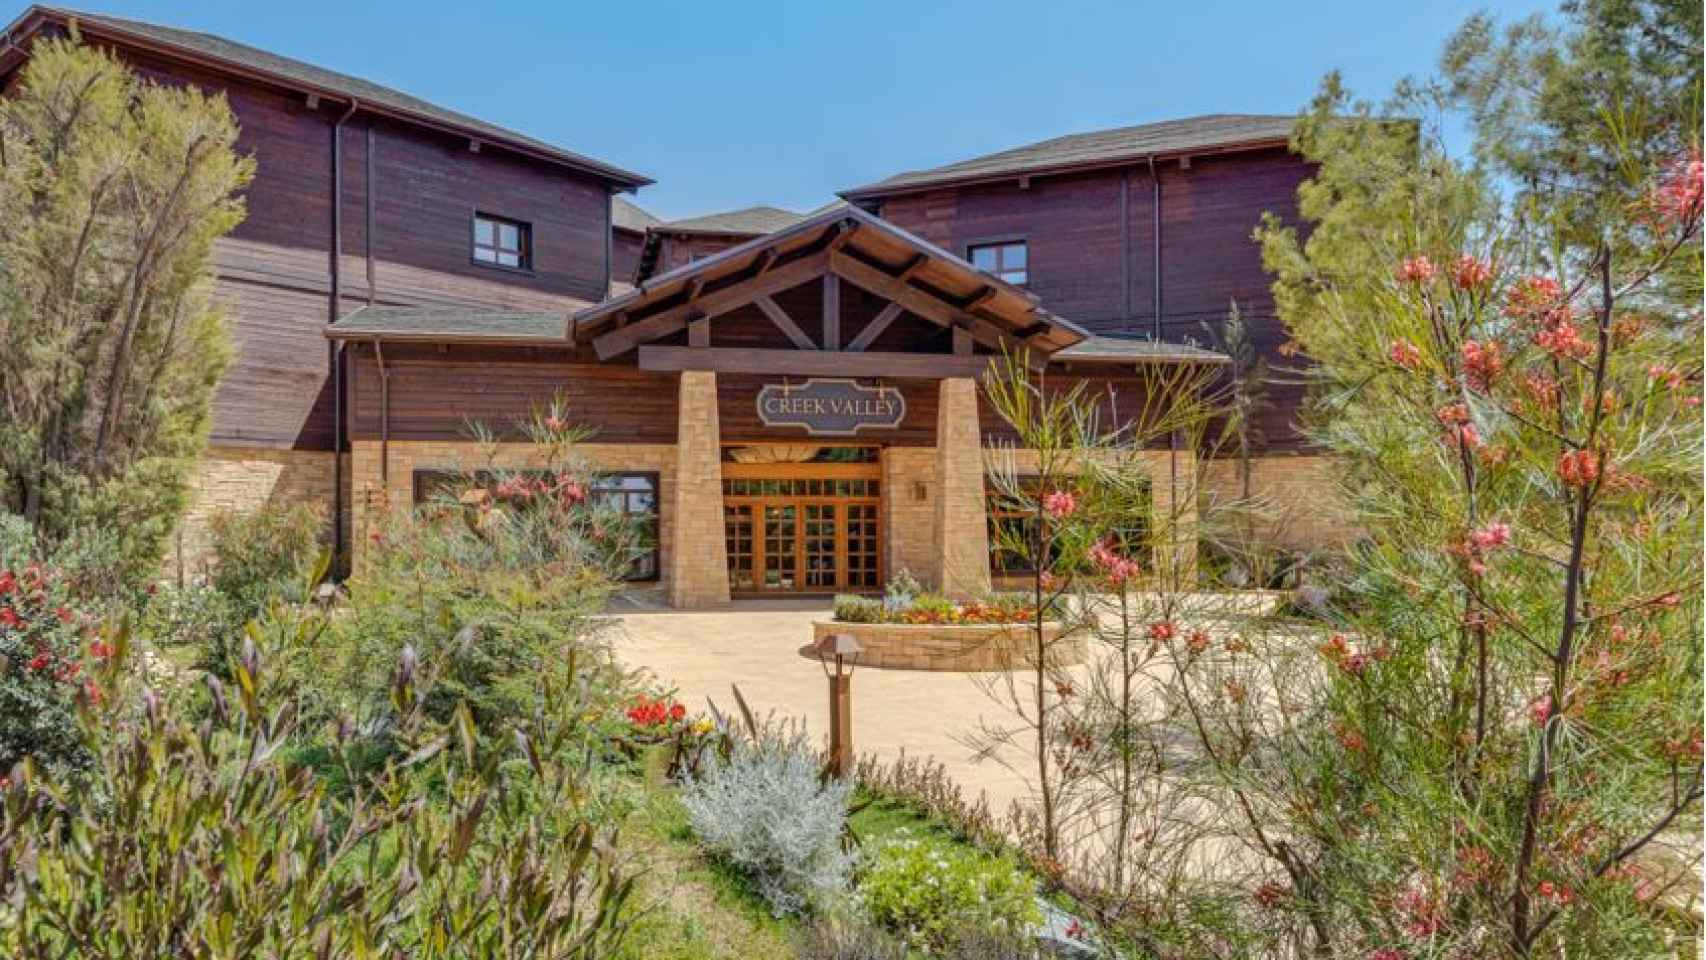 PortAventura World abrió el 5 de junio el nuevo edificio Creek Valley, una extensión del Hotel Colorado Creek.